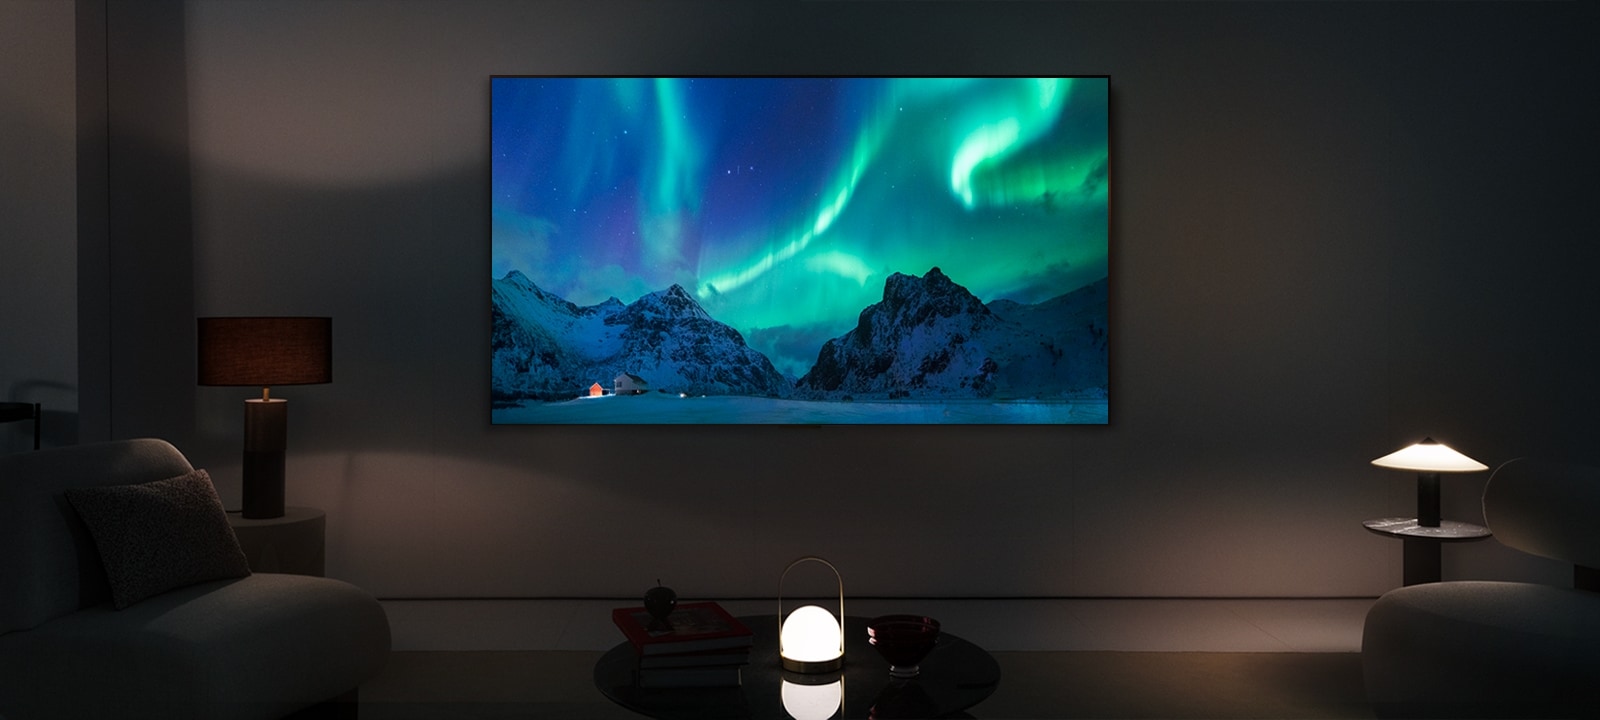 Una imagen de un televisor LG OLED y una barra de sonido LG en un espacio moderno durante la noche. La imagen de la aurora boreal se muestra con los niveles de brillo ideales